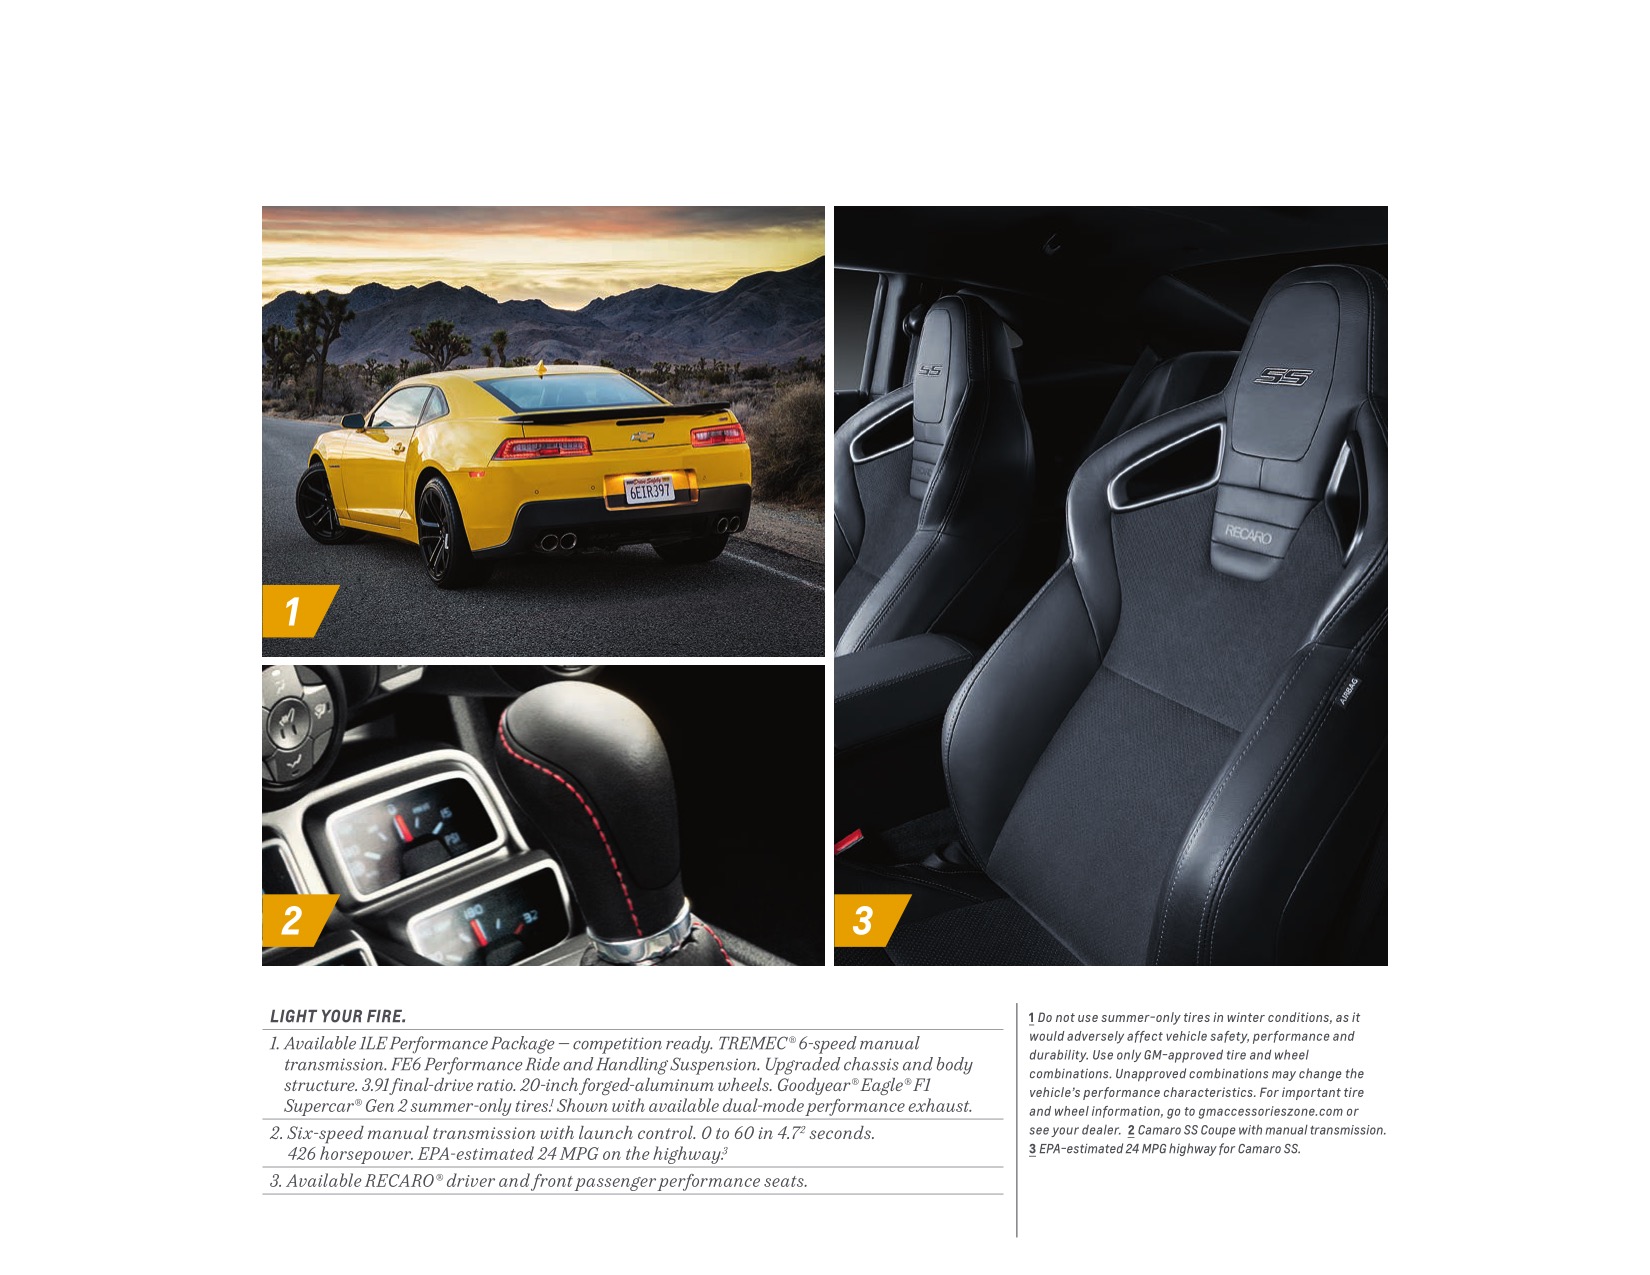 2015 Chev Camaro Brochure Page 4